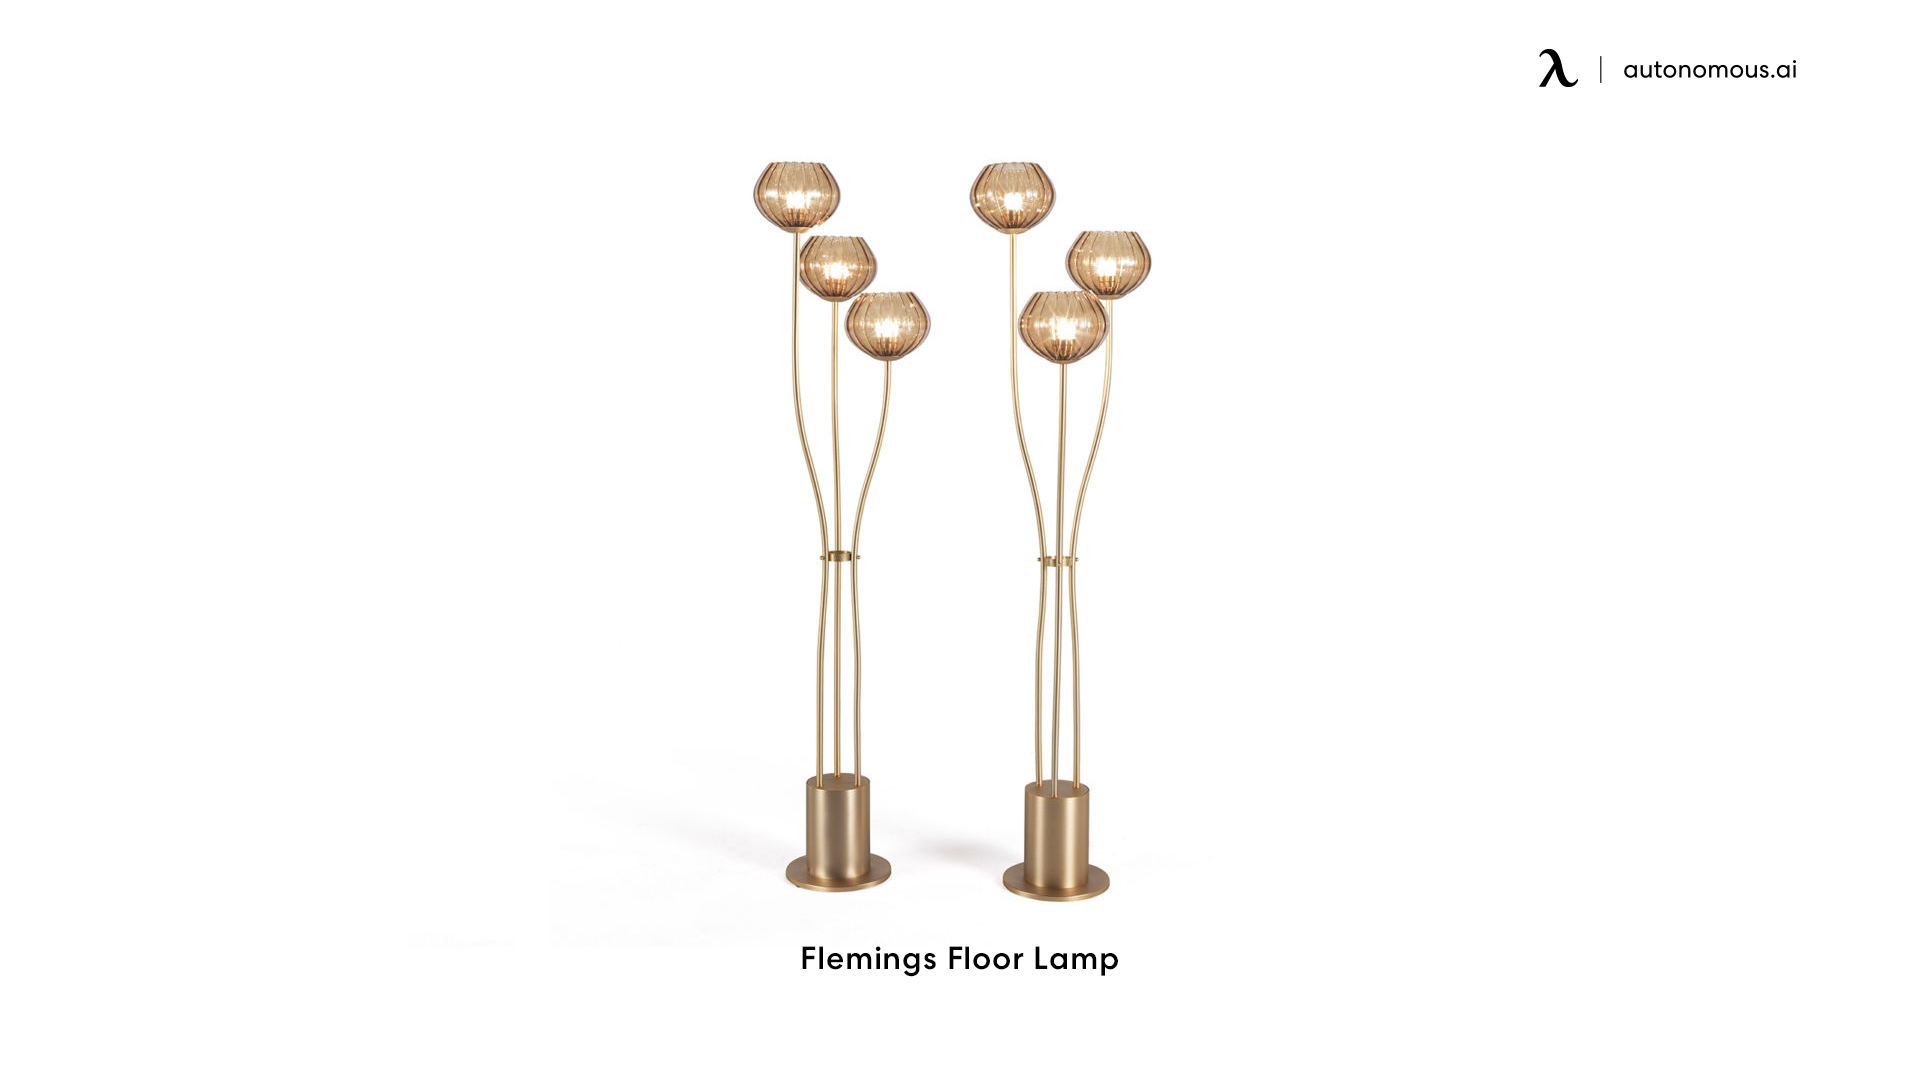 Flemings Floor Lamp